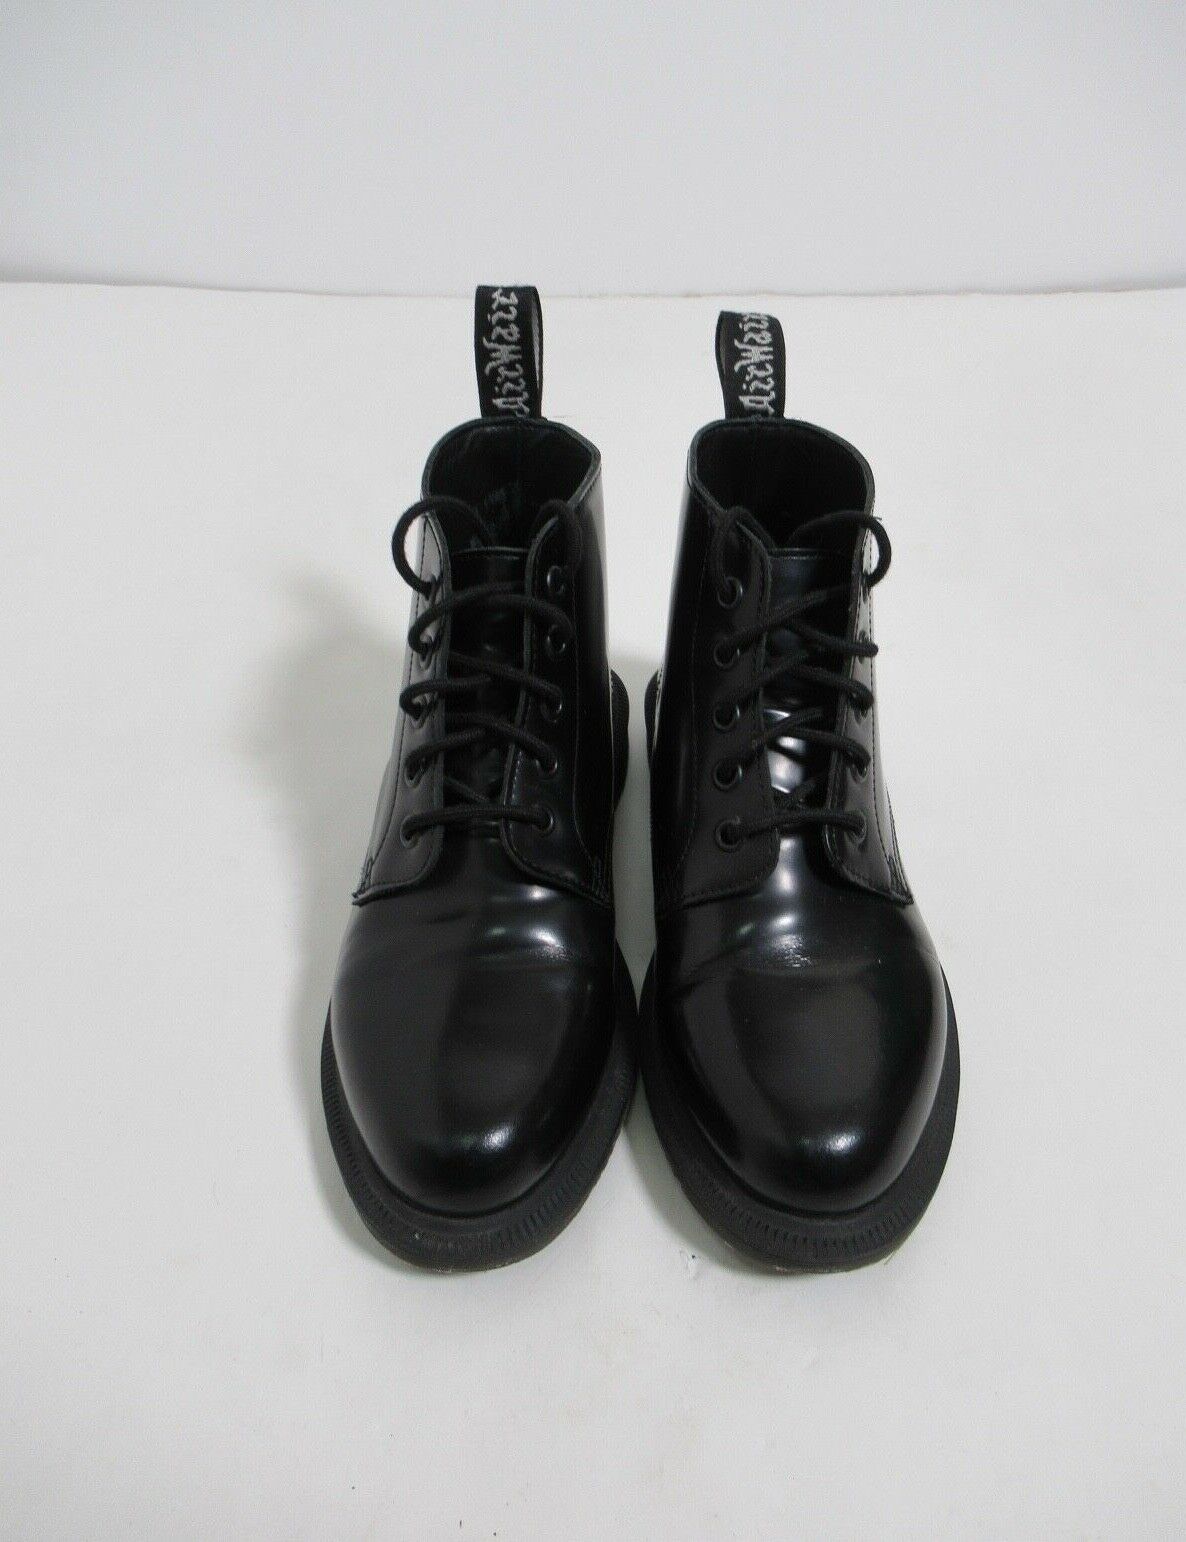 Dr Martens Emmeline Smooth Leather Up Ankle Boots Black Polished 5 US | eBay